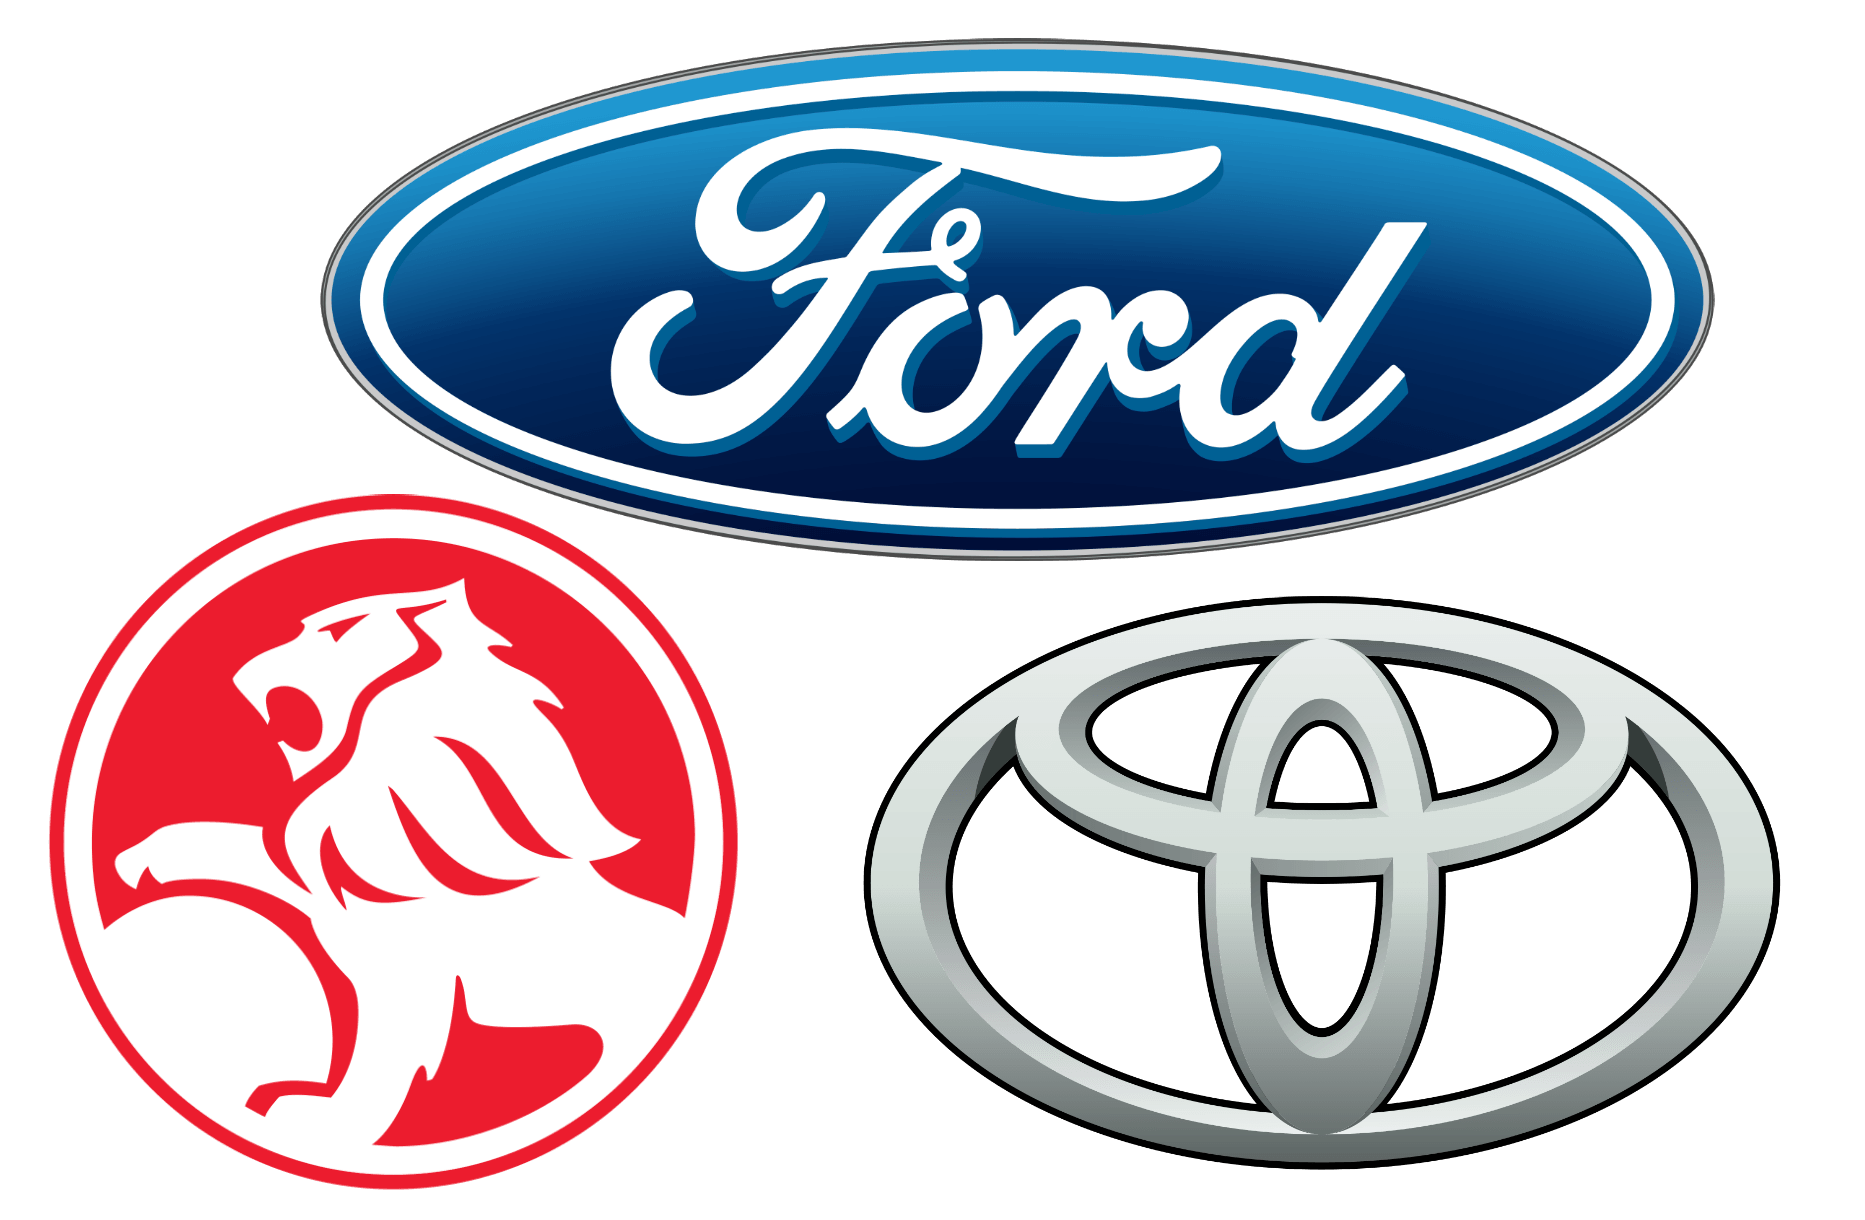 Foreign Car Brand Logo - Australian Car Brands, Companies and Manufacturers | Car Brand Names.com